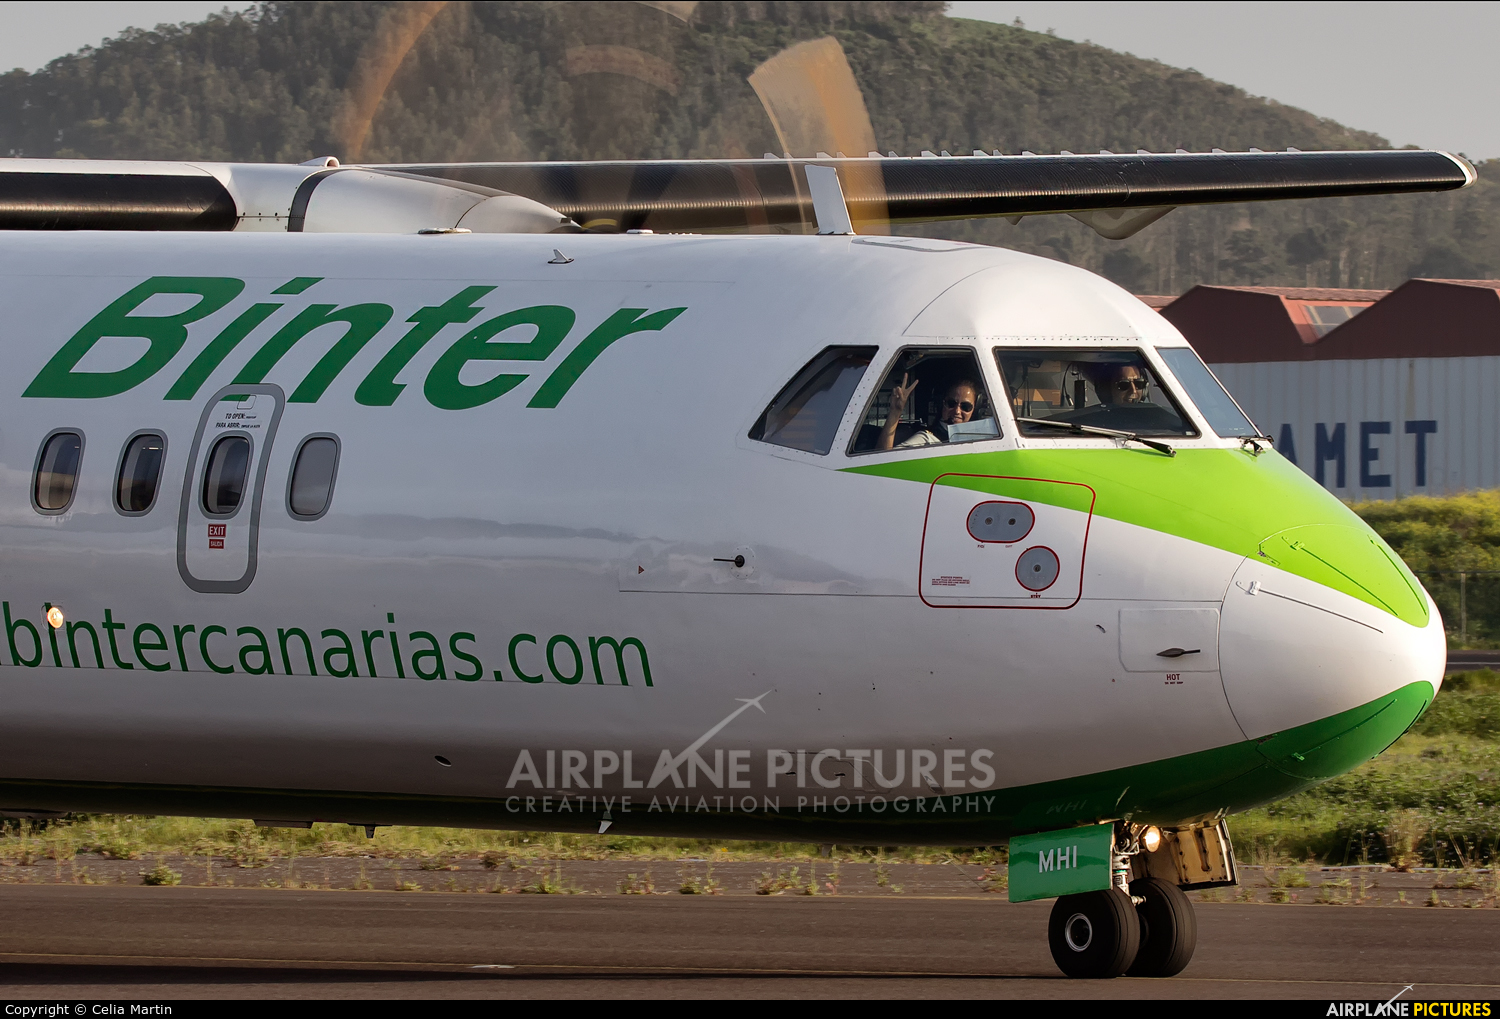 Binter Canarias EC-MHI aircraft at Tenerife Norte - Los Rodeos